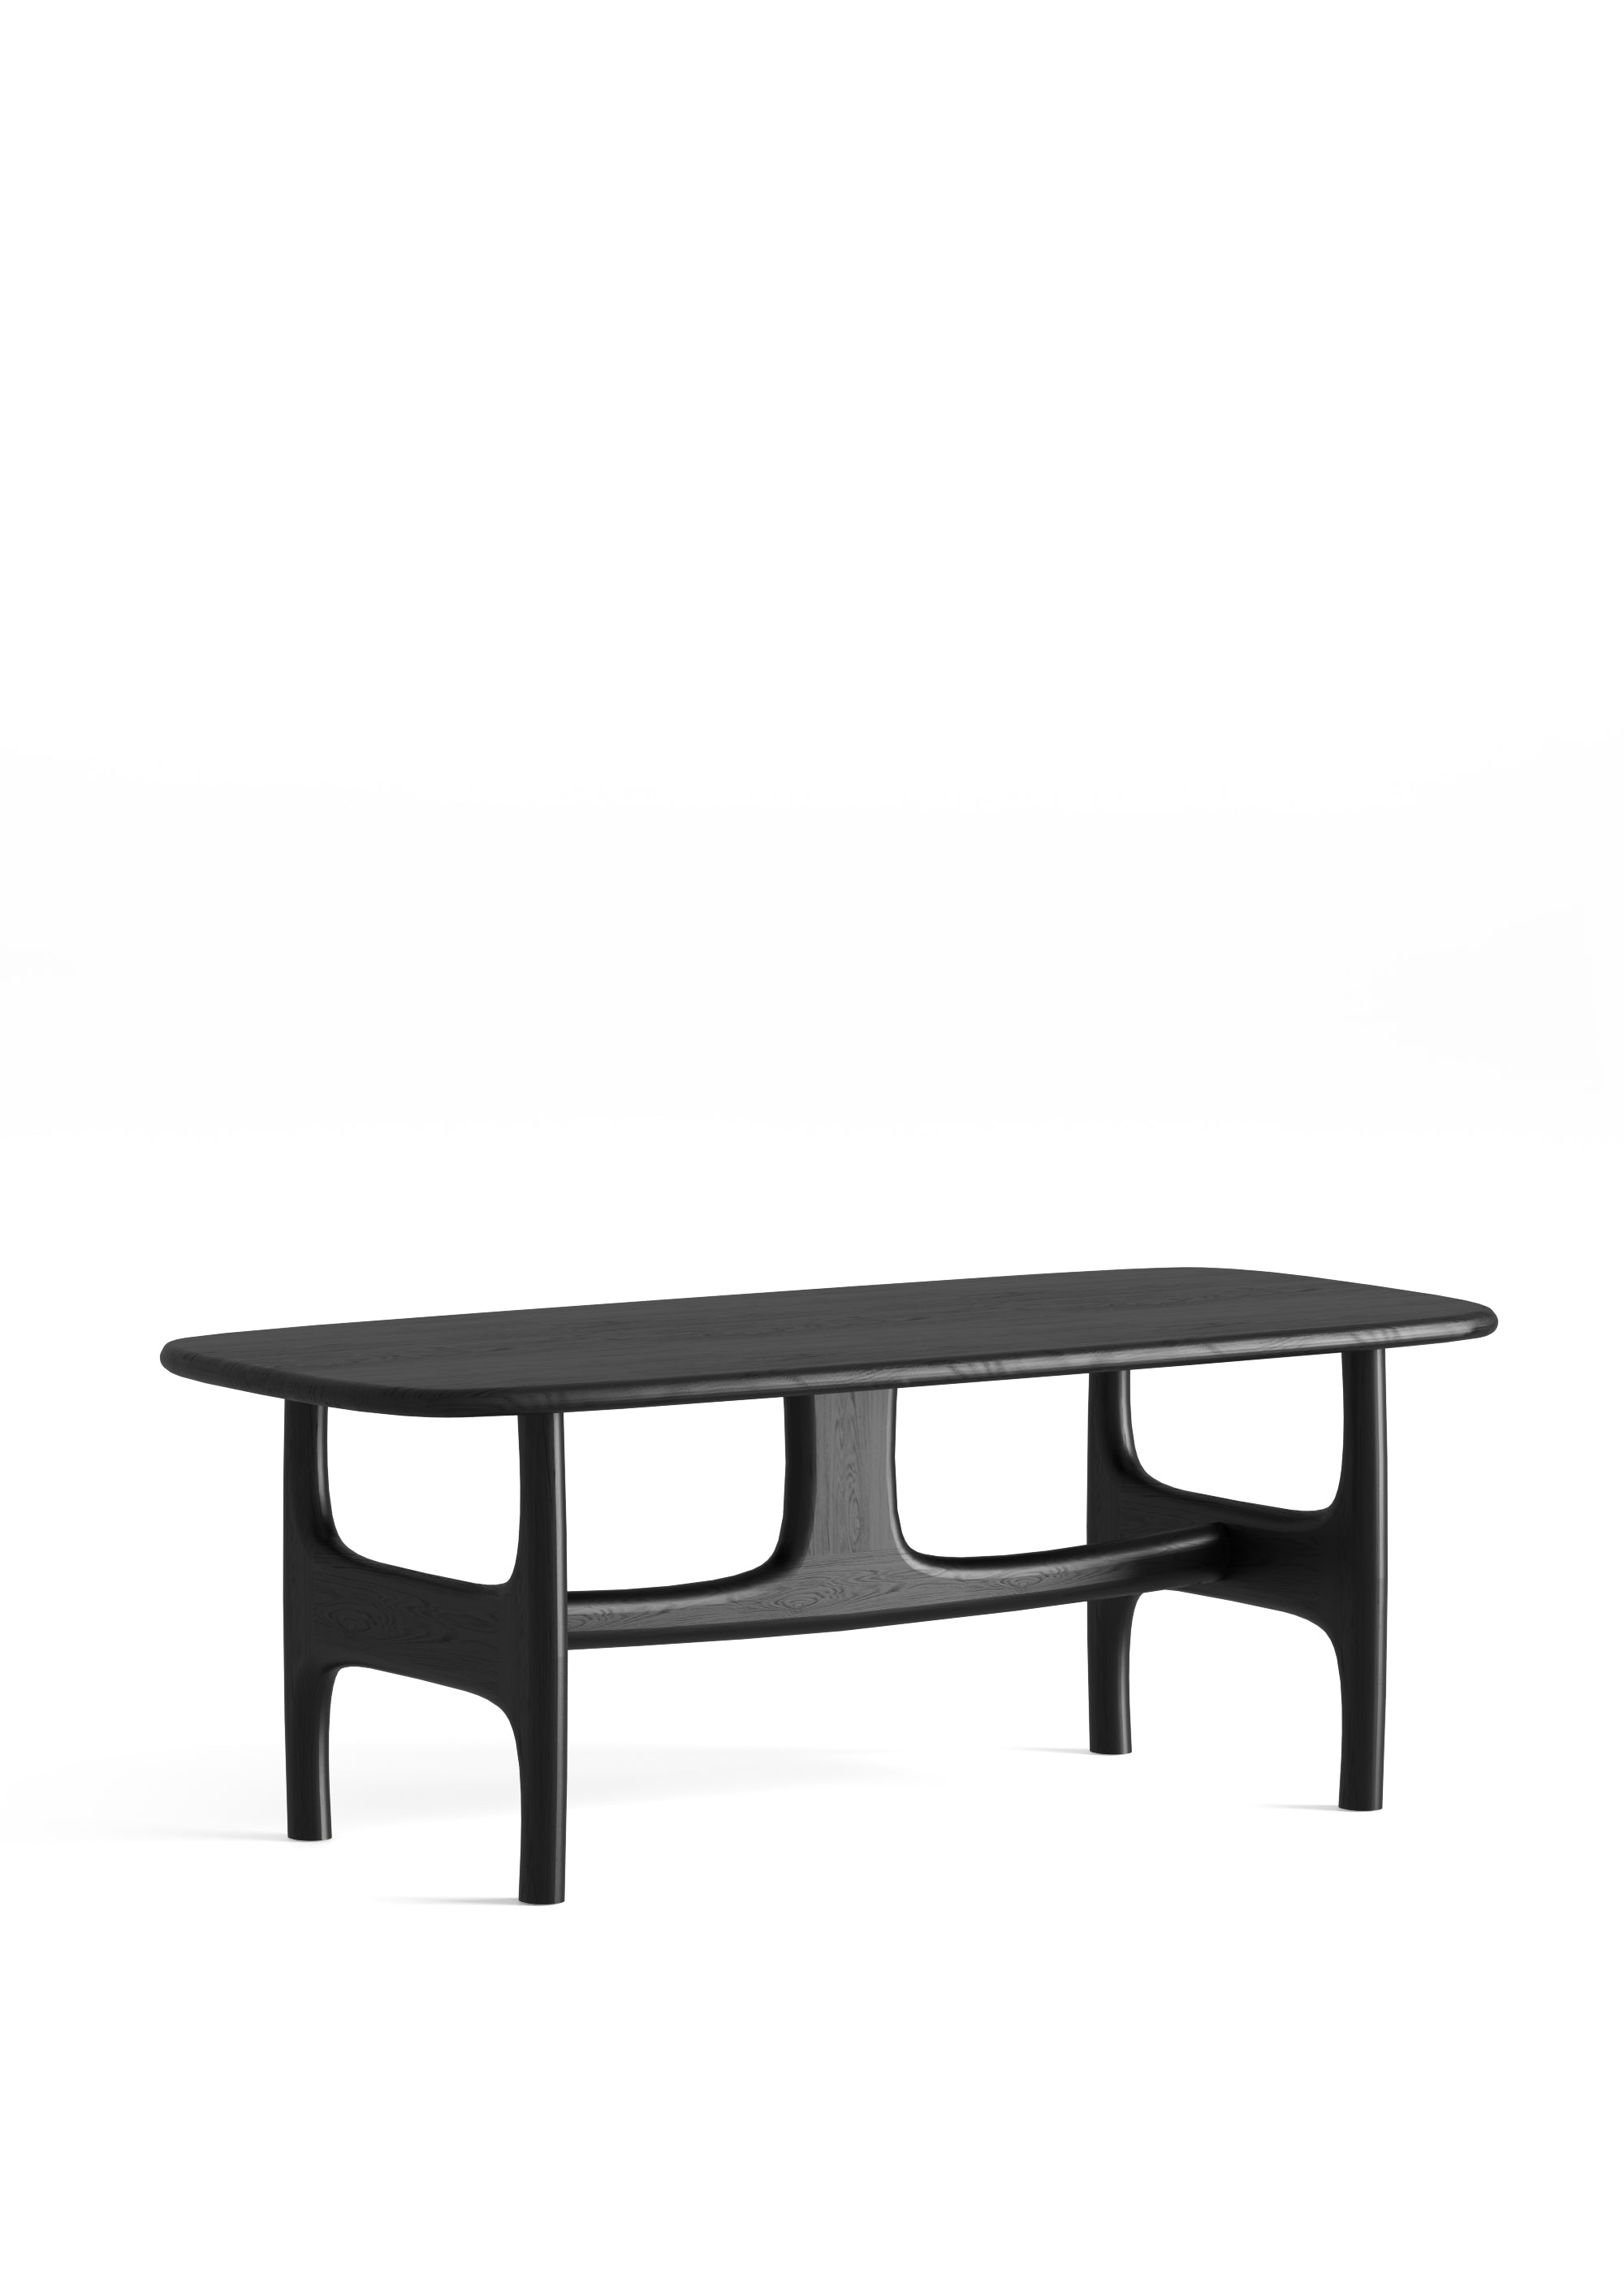 Table OLFO black oak